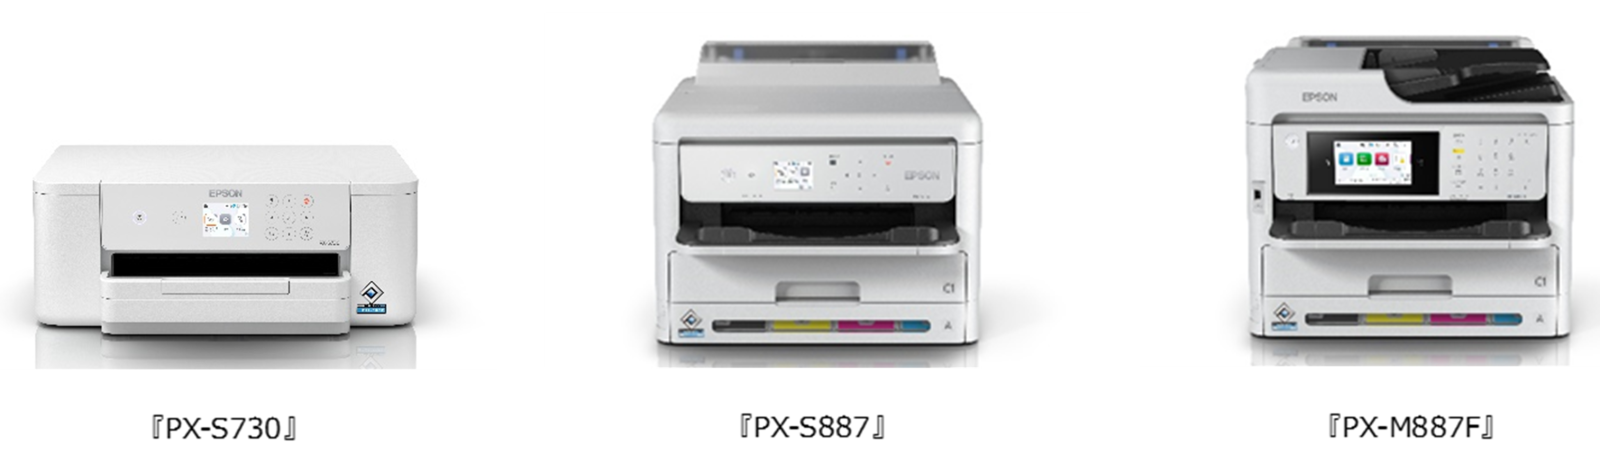 エプソン、ビジネス向けA4インクジェットプリンター「PX-S730